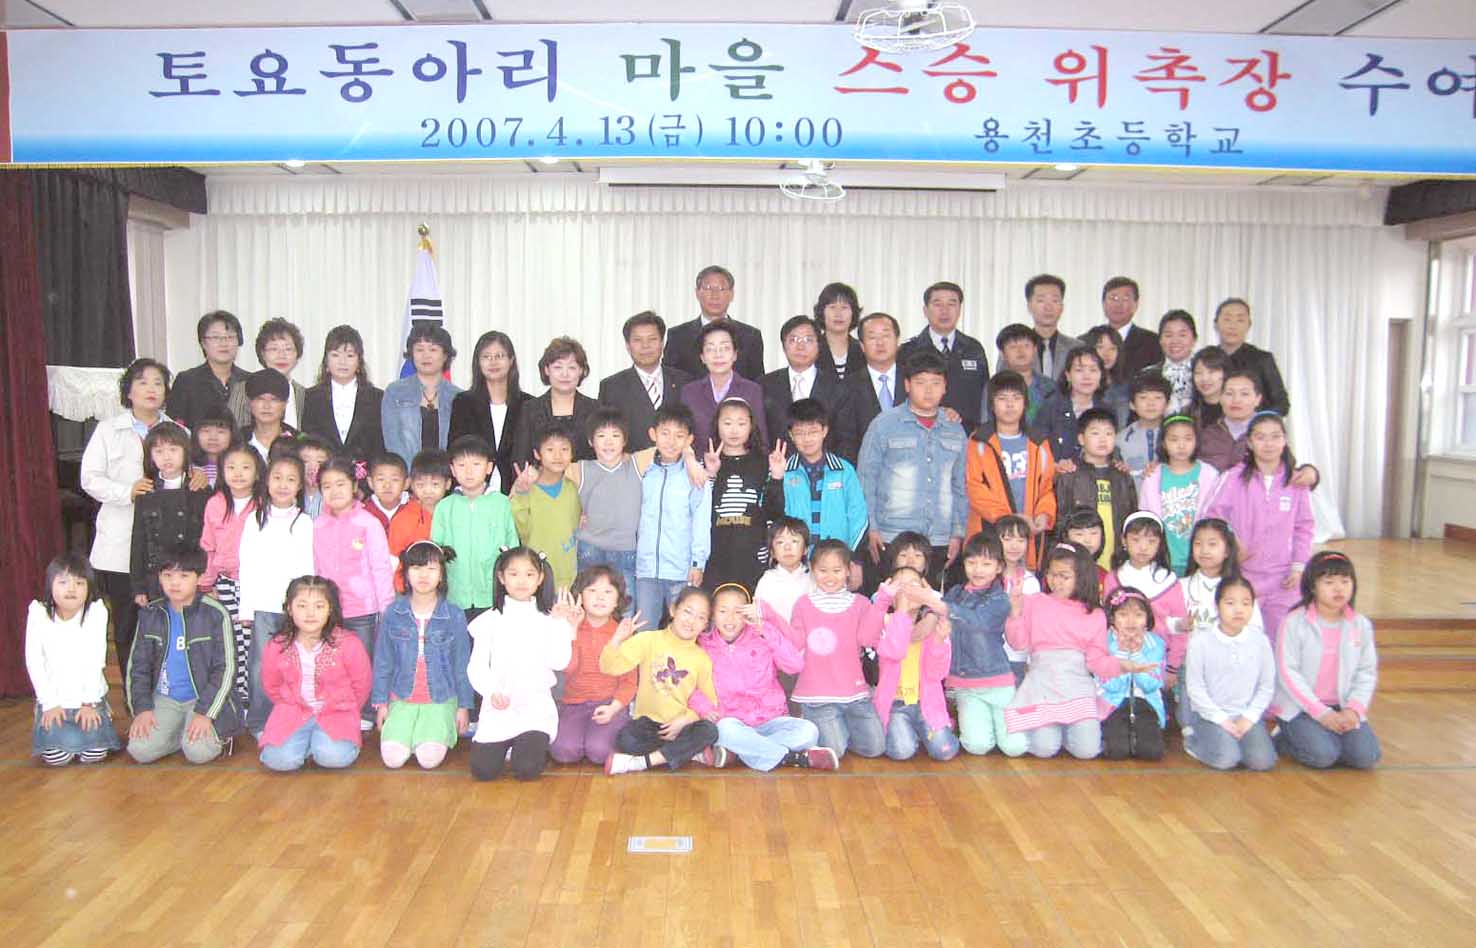 용천초교 체험학습 토요동아리 마을 스승 위촉장 수여식 개최